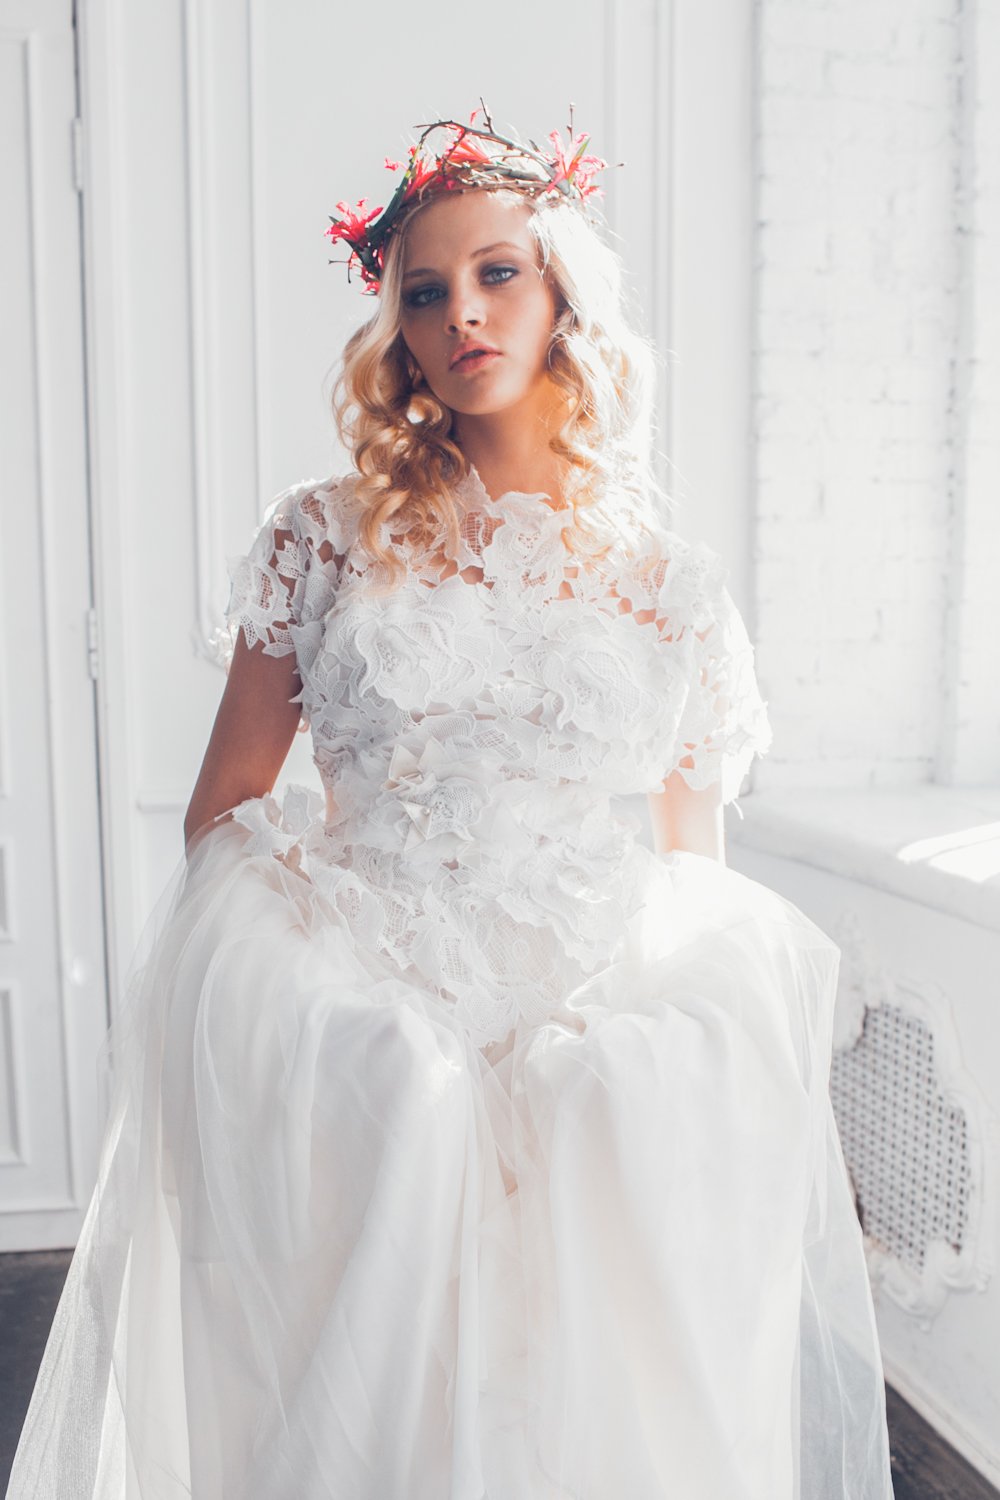 Белое и пышное платье невесты